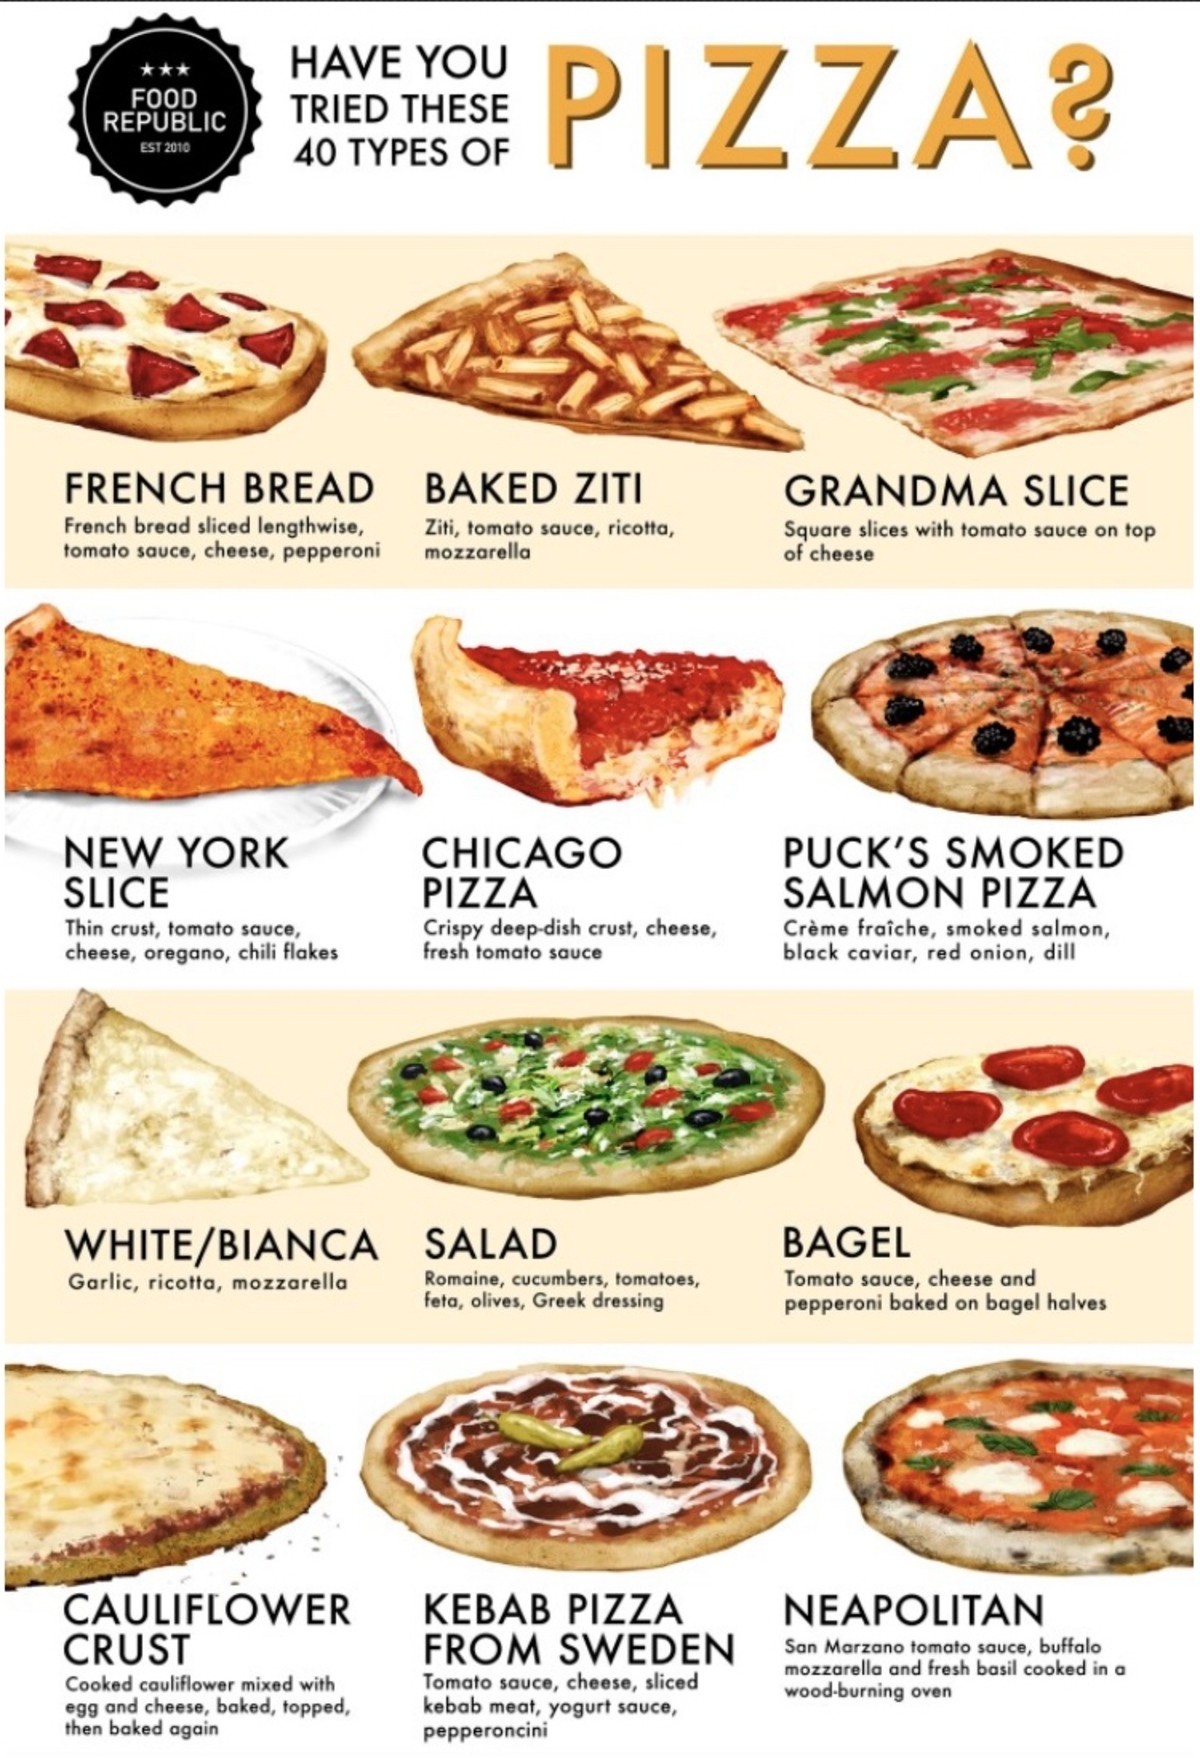 ассортимент пиццы в картинках и рецепты фото 65